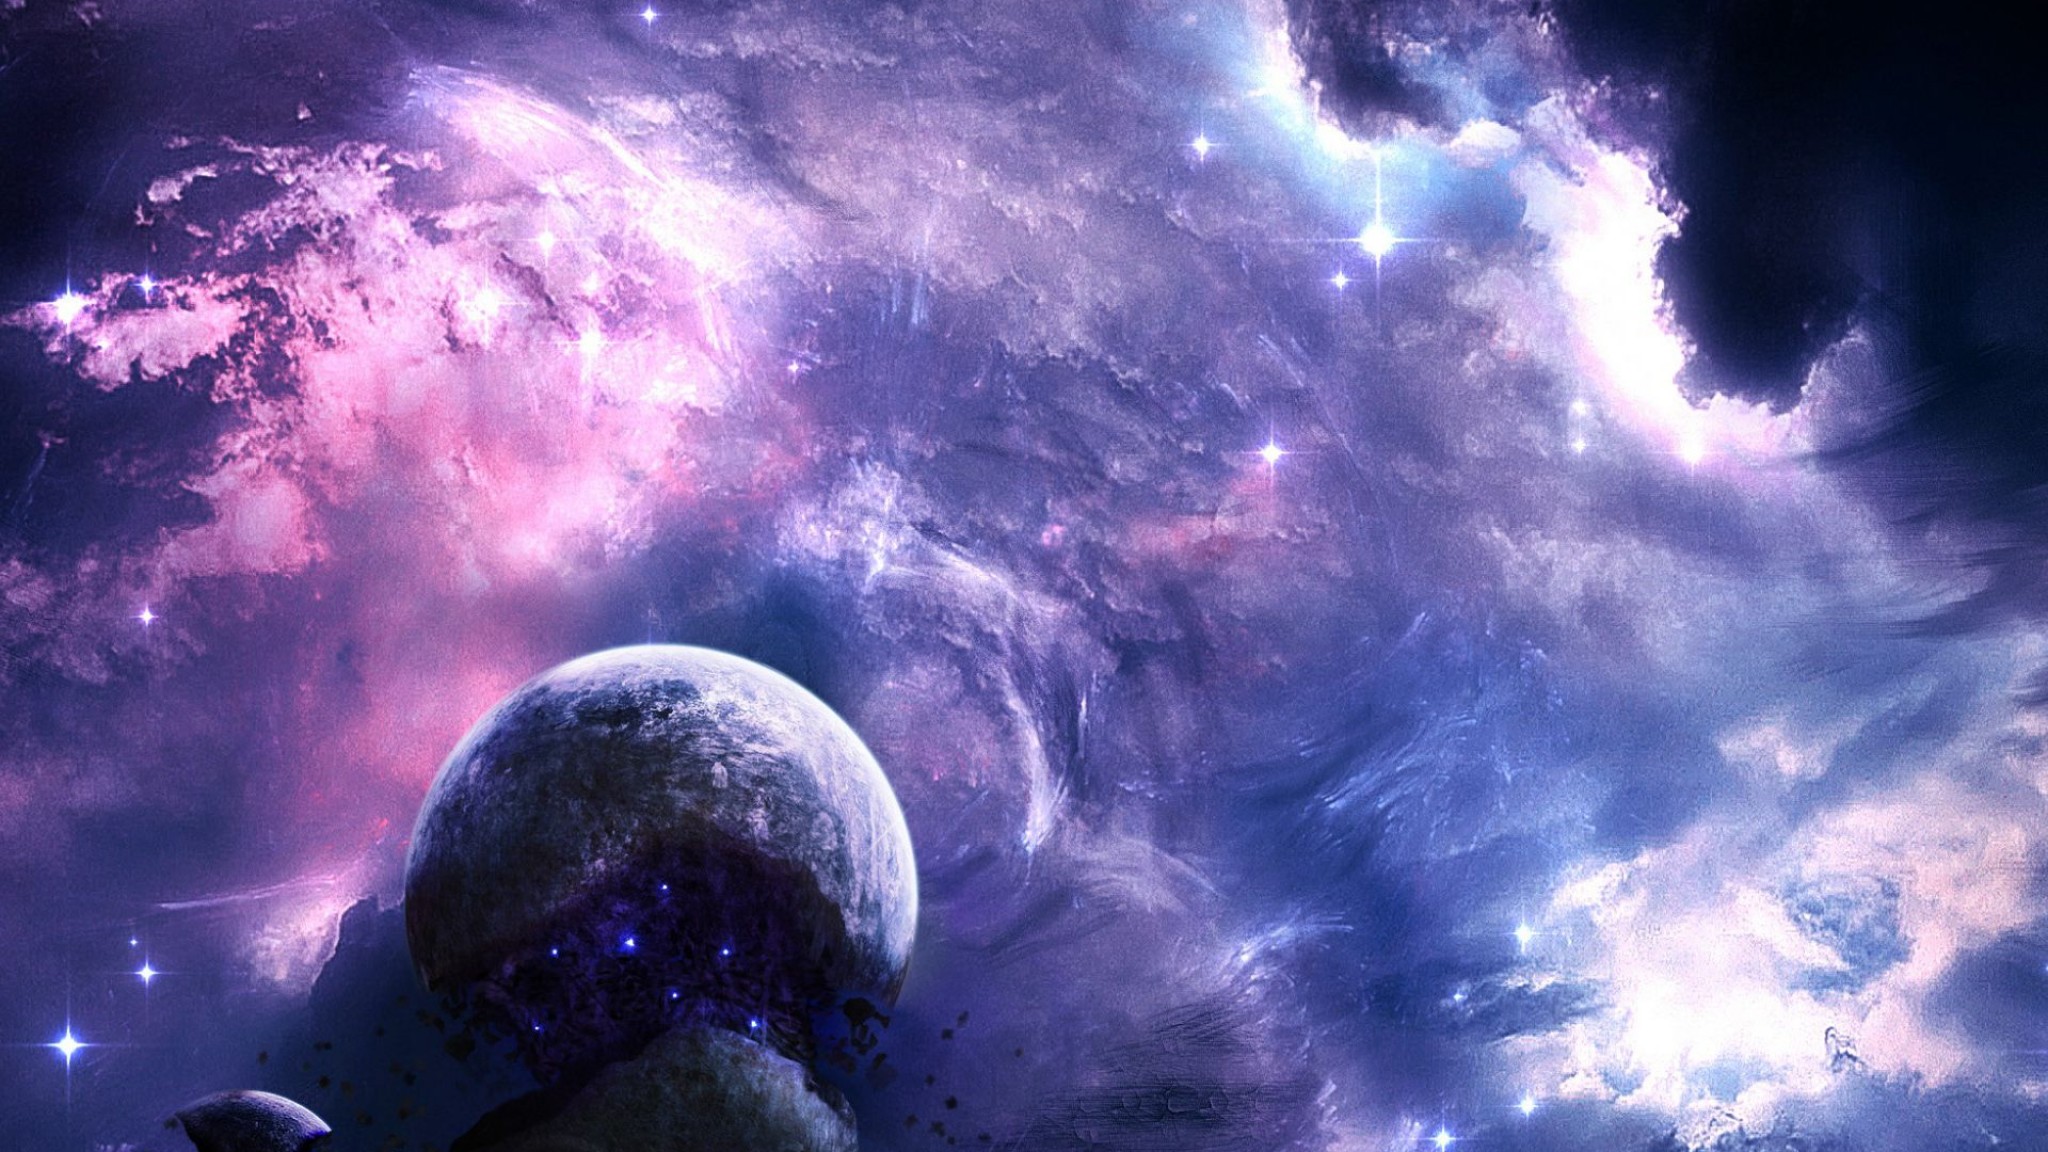 sfondo per il canale youtube,spazio,cielo,atmosfera,oggetto astronomico,universo